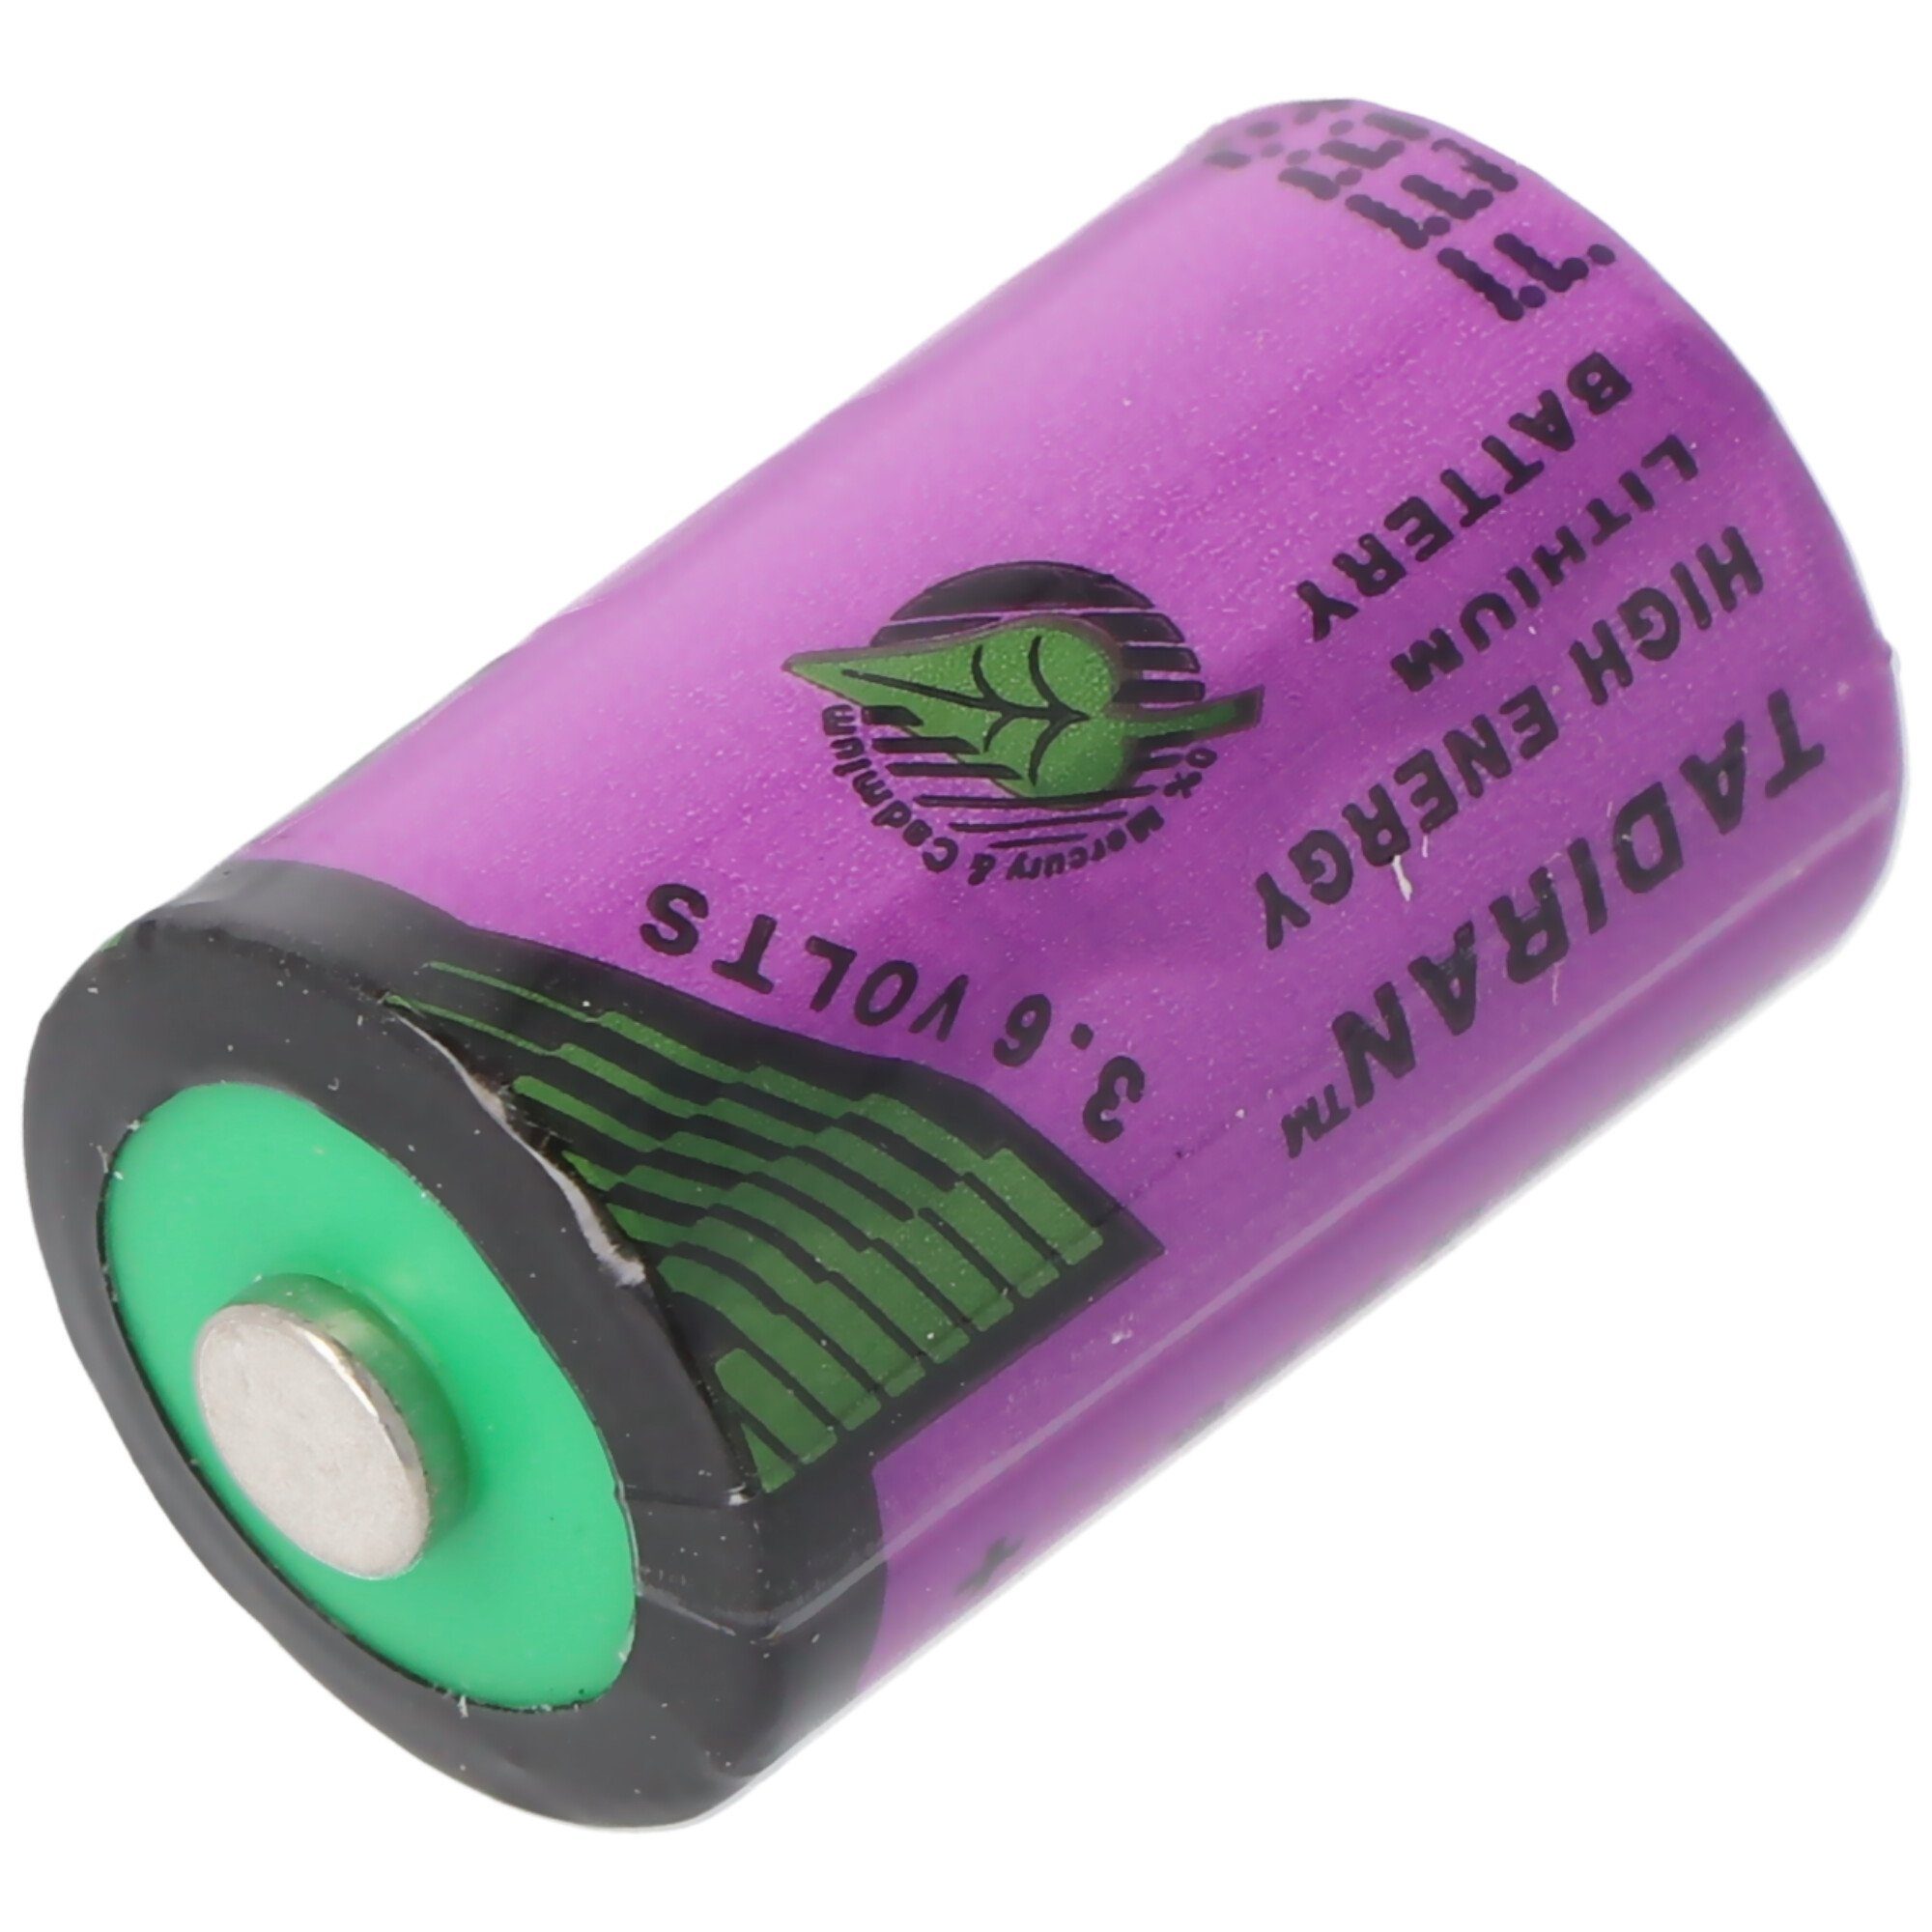 Standard Sonnenschein Batterie, LF Lithium Tadiran ohne V) SL-350/S Inorganic (3,6 Battery